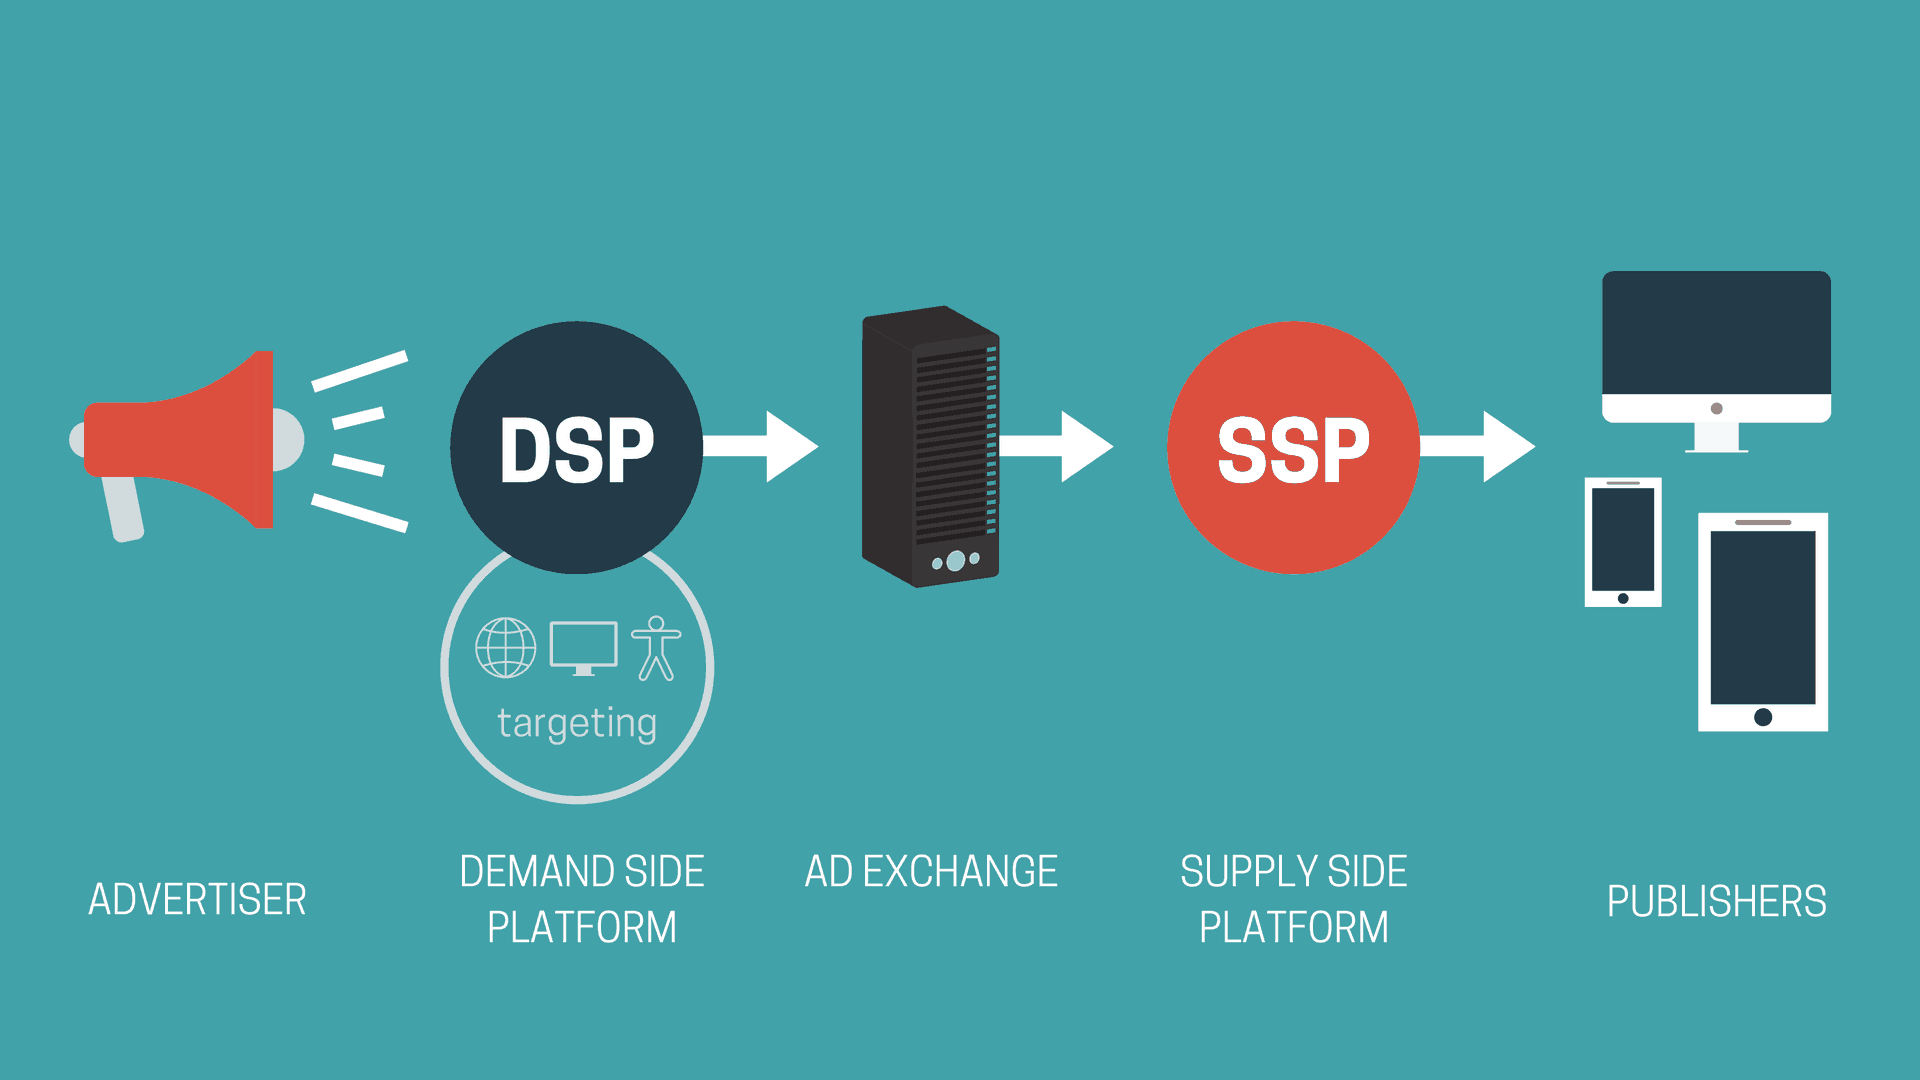 Global Demand Side Platform Dsp System Market 2020 Research